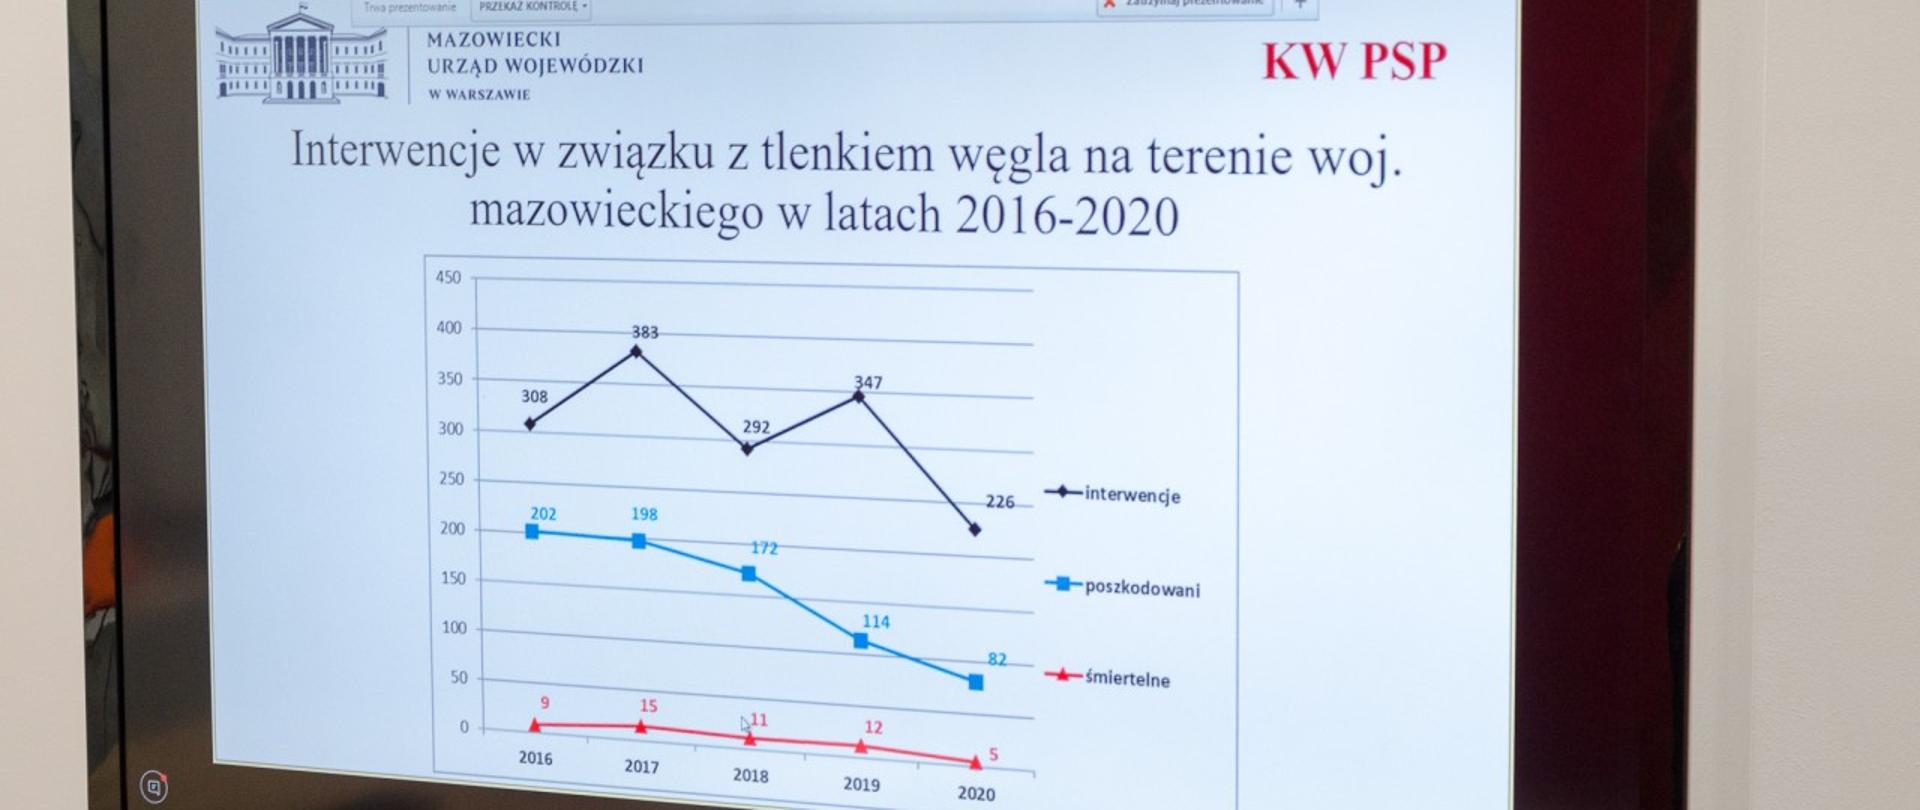 Zdjęcie przedstawia monitor do wideokonferencji, na którym wyświetlone są statystyki interwencji oraz zatruć tlenkiem węgla (czadem) na terenie woj. mazowieckiego w latach 2016-2019.